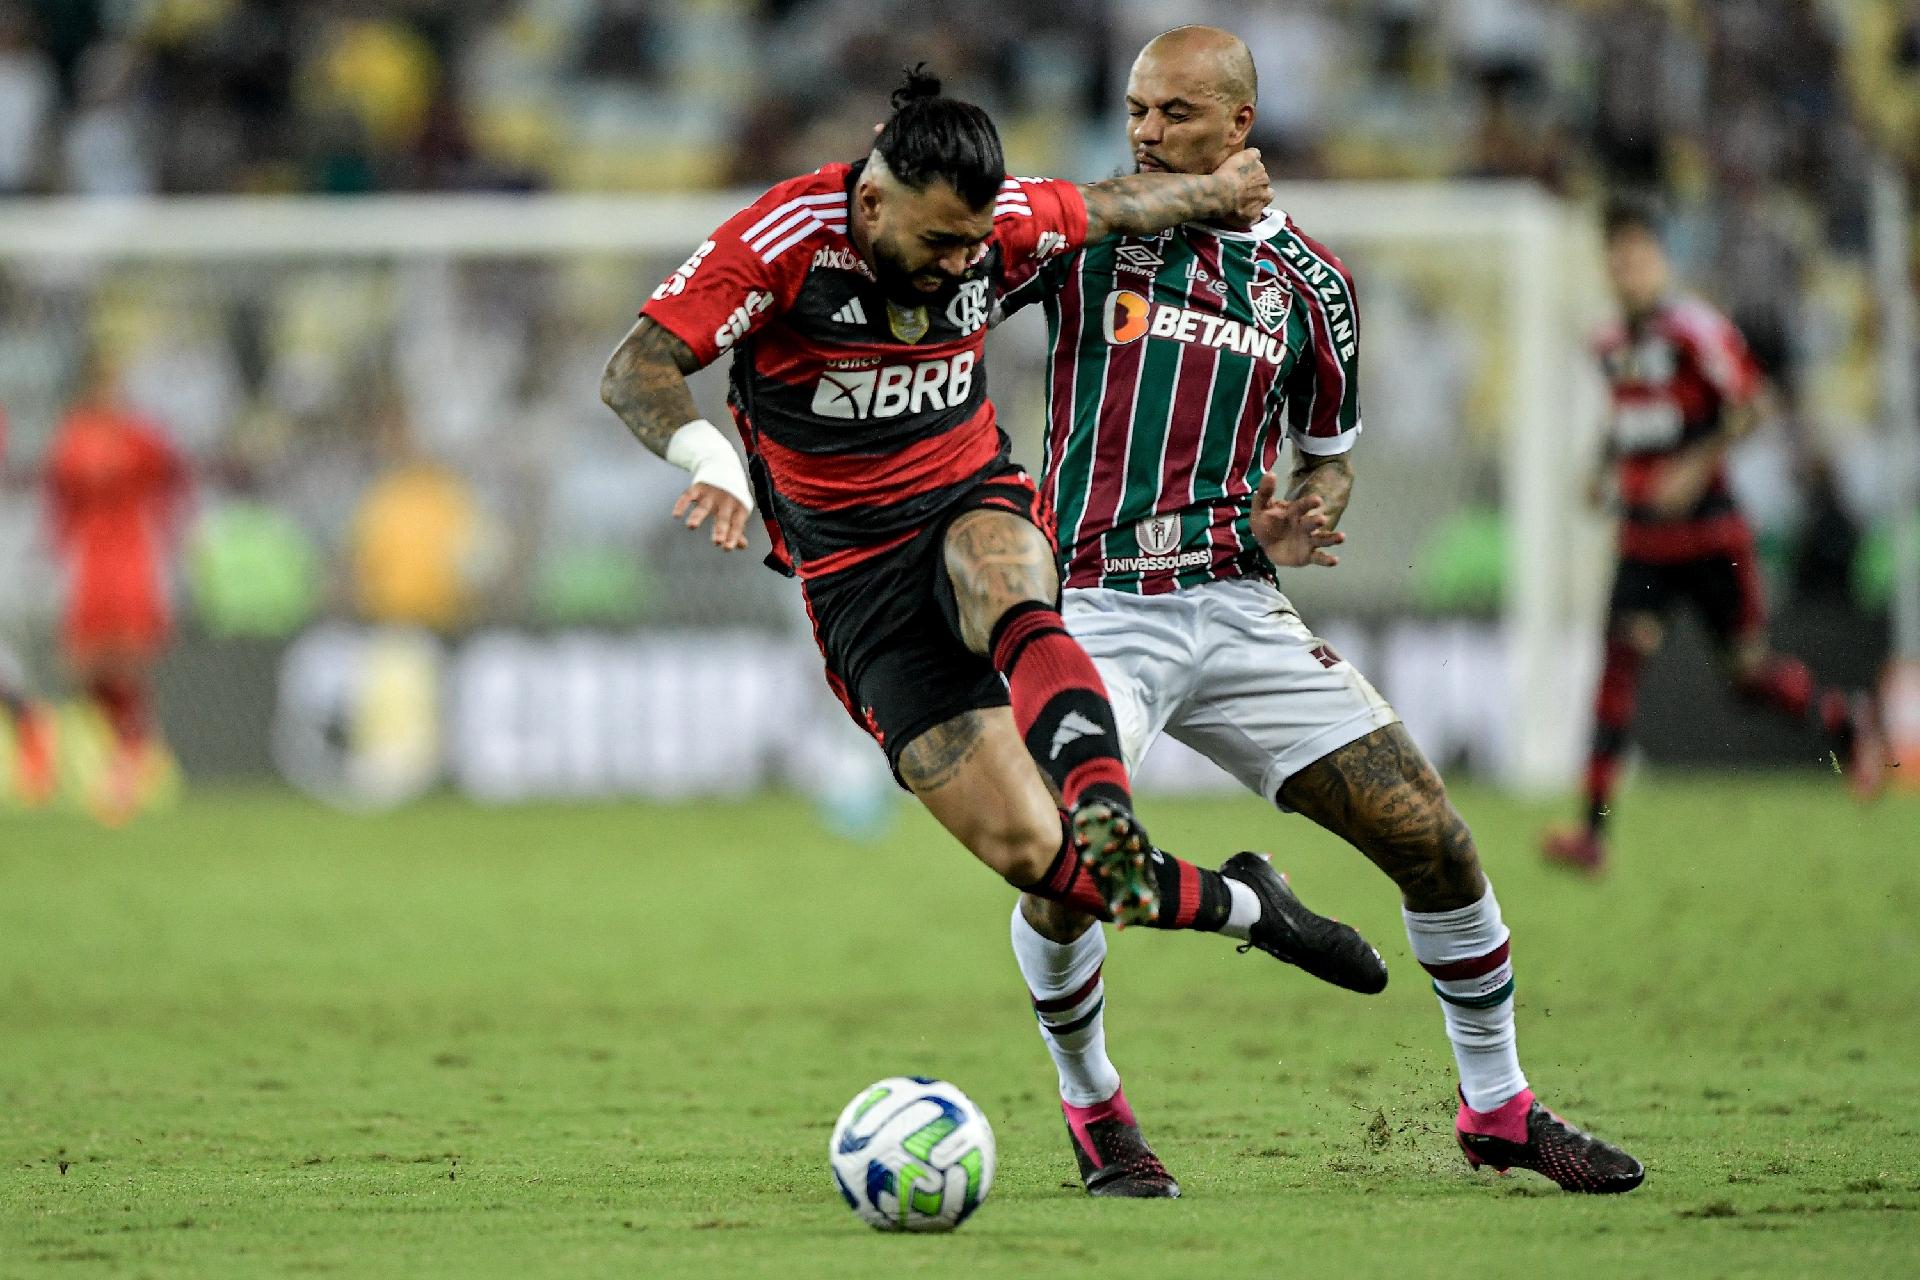 Brasileirão: como foram os últimos jogos entre Flamengo e Fluminense?